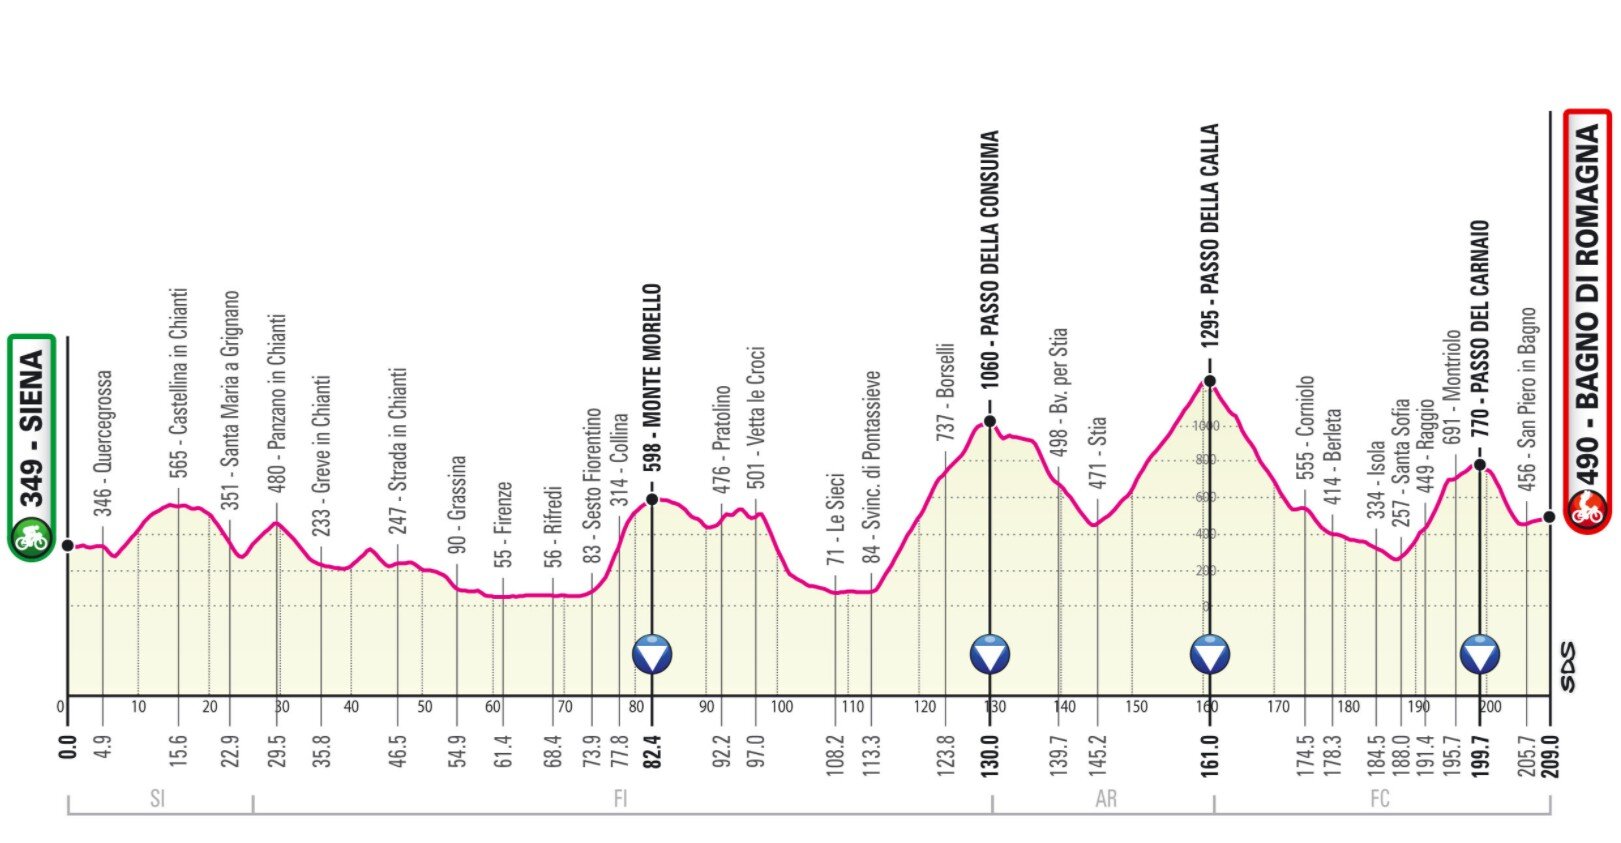 Etapa 12 Giro Italia 2021